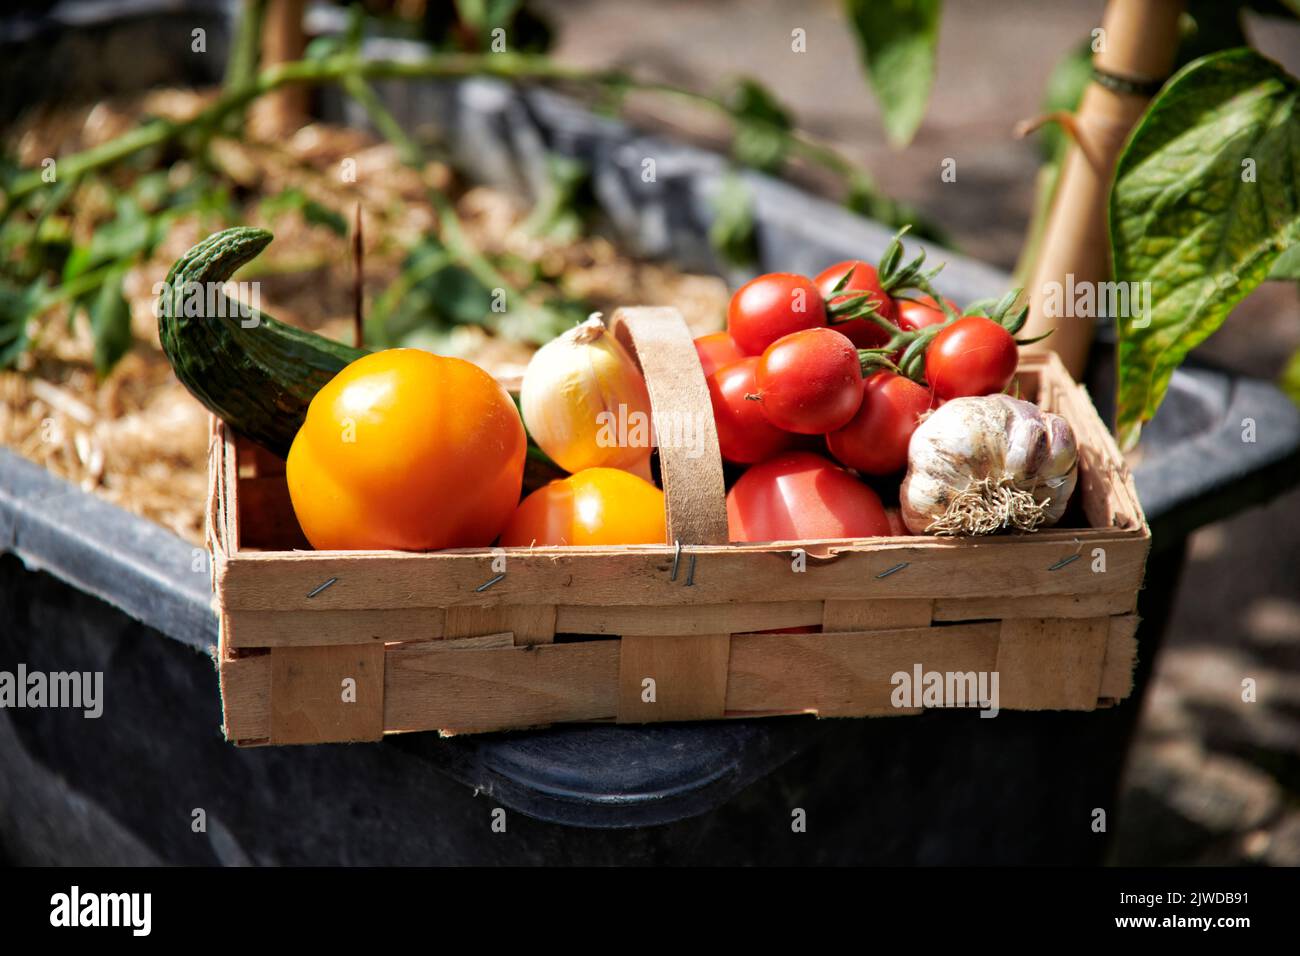 In einem Holzkorb befinden sich selbst im Garten angebautes Gemuese. Schlangengurke, verschiedene Tomatensorten, Knoblauch und Zwiebel. Stock Photo